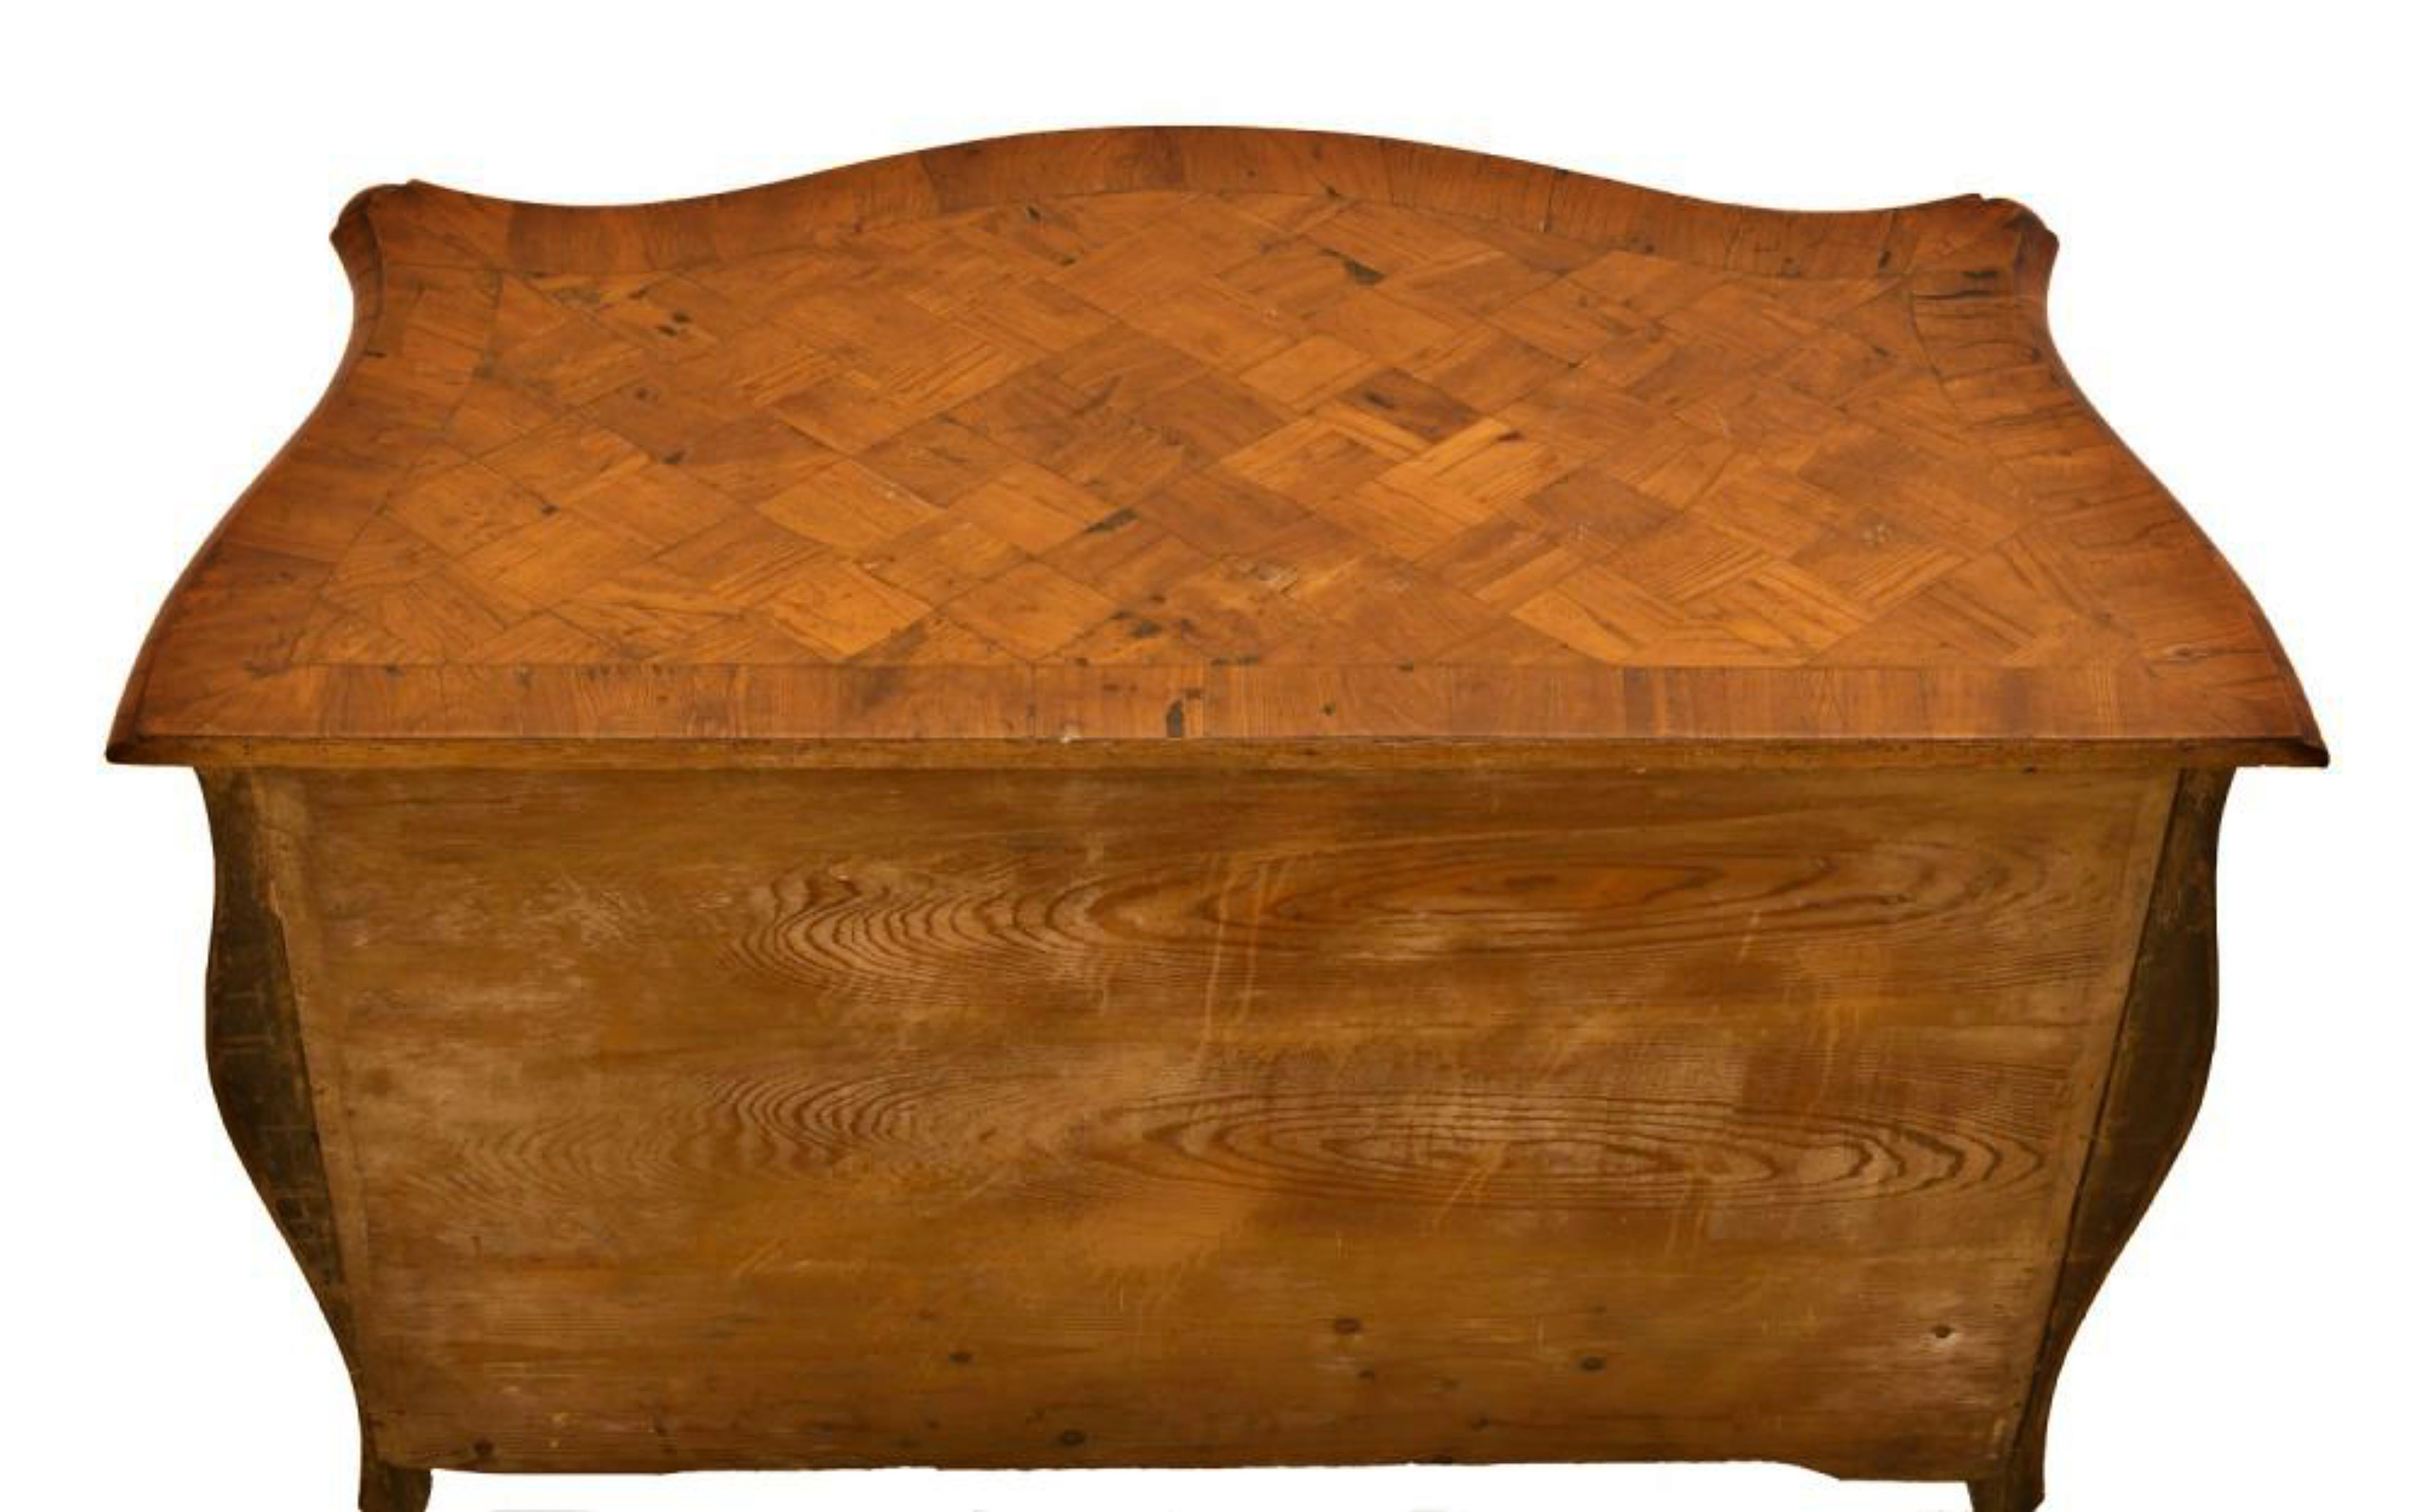 Französische Louis XV.-Kommode aus dem 18. Jahrhundert
bewegt furniert mit geometrischen Intarsien mit drei Schubladen
Frankreich
Abmessungen:
cm 80x103x53
Gewellte Stirn und Hüften.
Verziert mit vergoldeten Bronzeelementen an der Seite, am